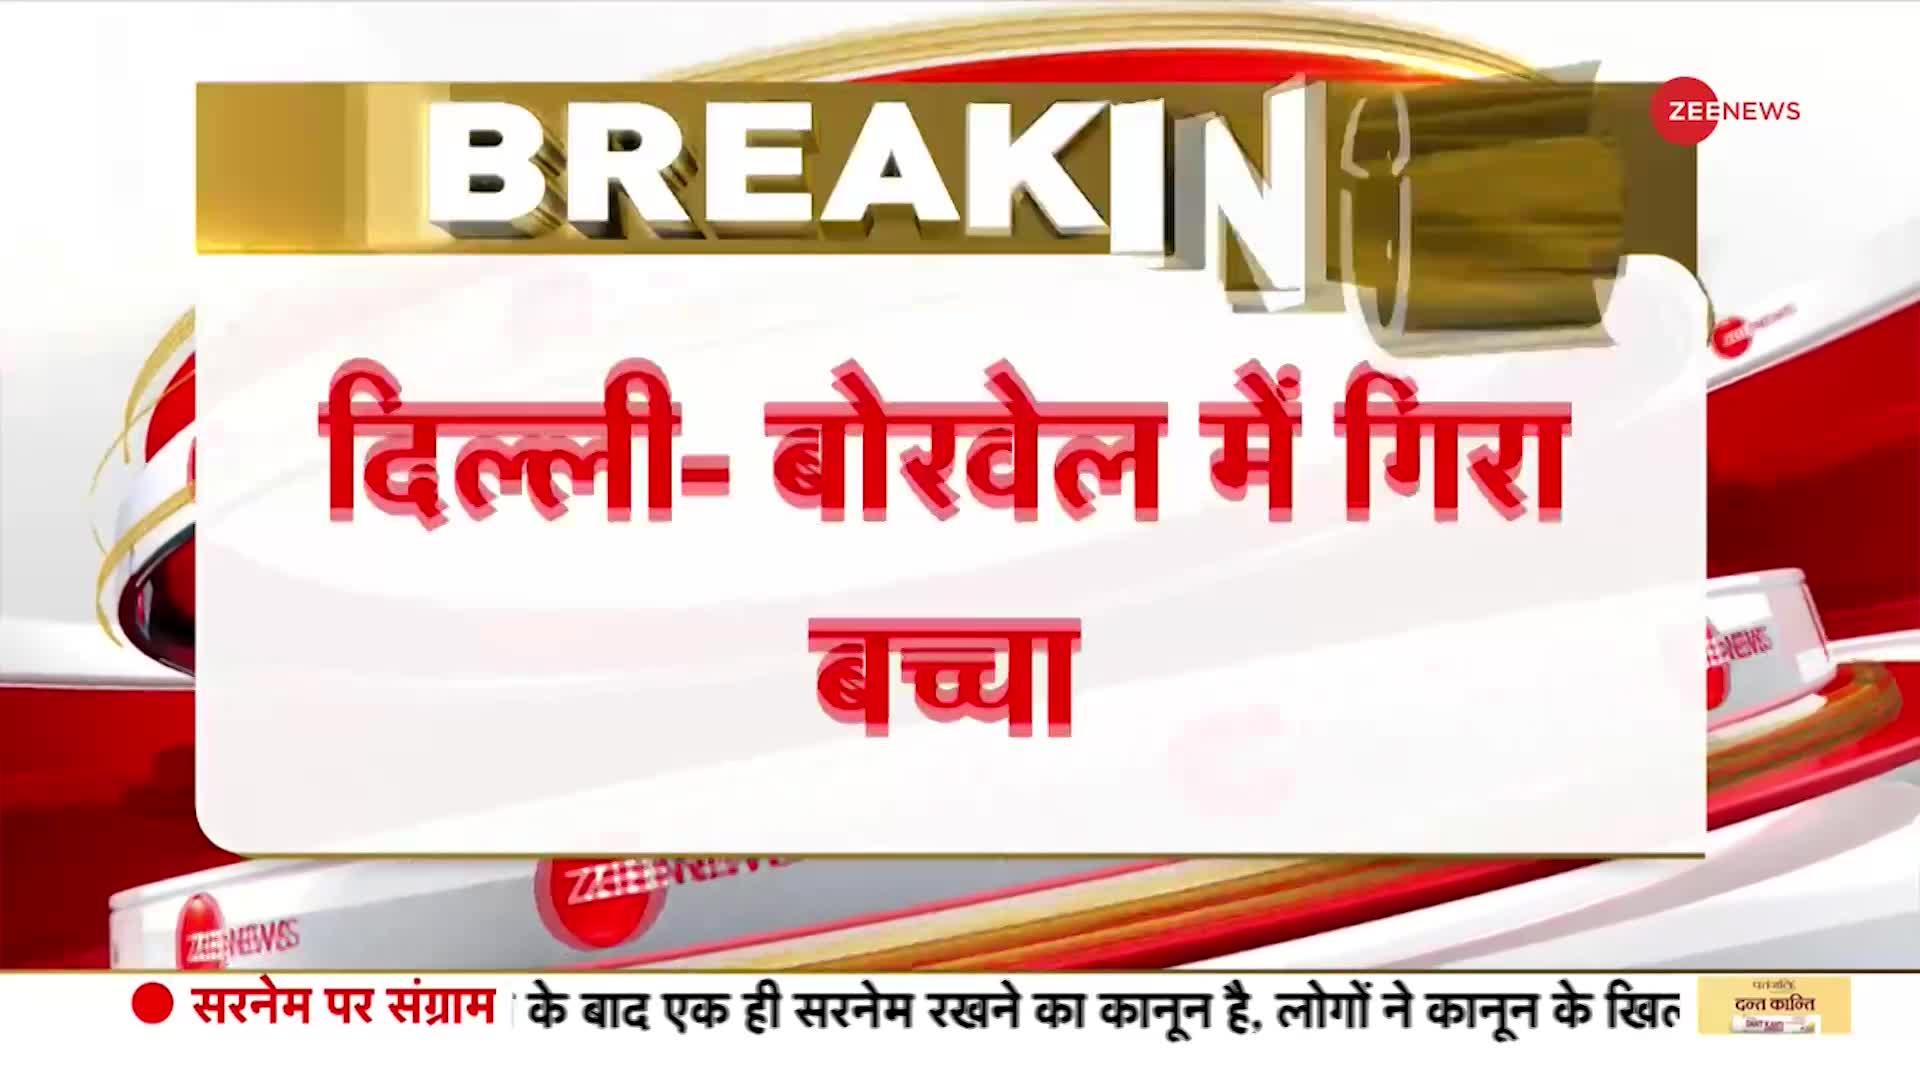 Delhi Breaking: केशोपुर मंडी में 40 फीट गहरे बोलवेल में गिरा बच्चा। Child fallen into Borewell